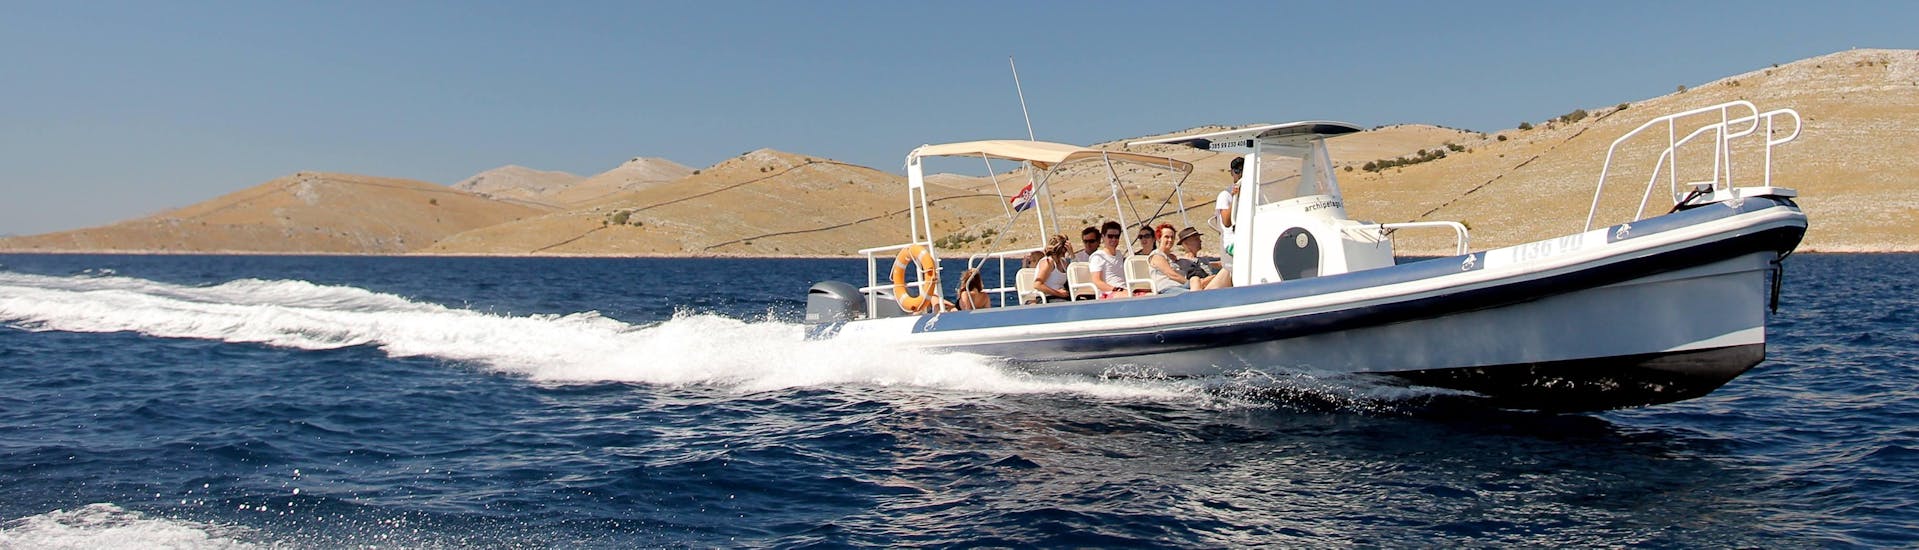 Gita in barca a Parco Nazionale Isole Kornati con bagno in mare e osservazione della fauna selvatica.